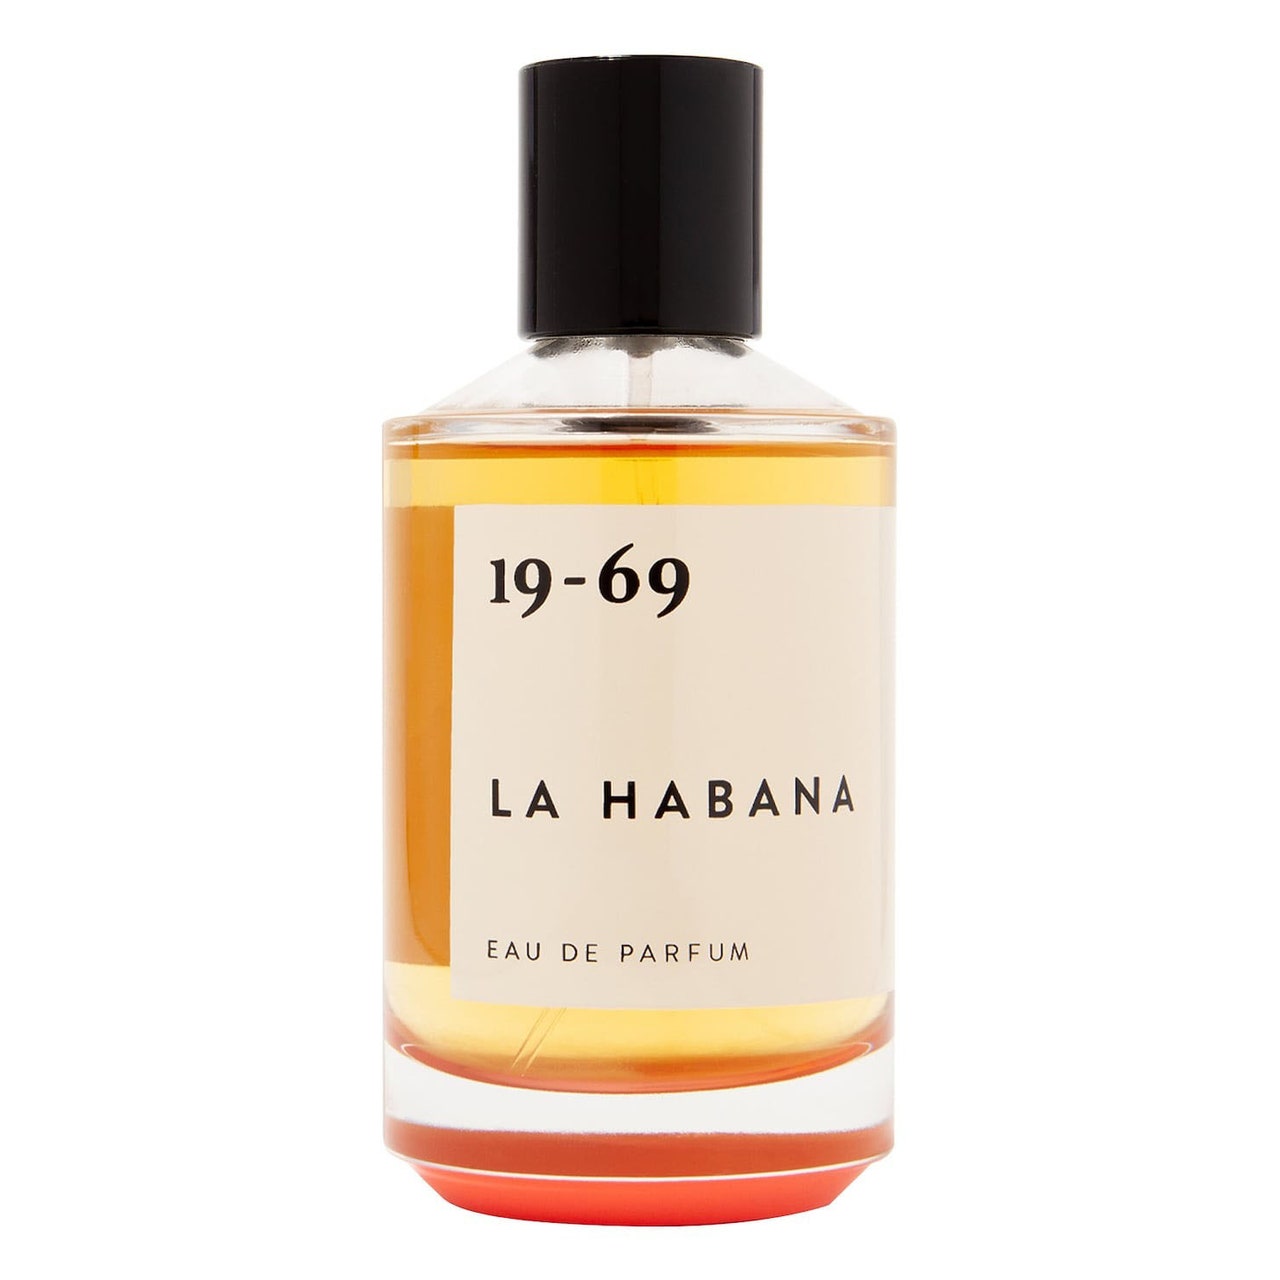 19-69 La Habana Eau de Parfum in Glasflasche mit orangefarbenem Inhalt und schwarzem Verschluss auf weißem Hintergrund